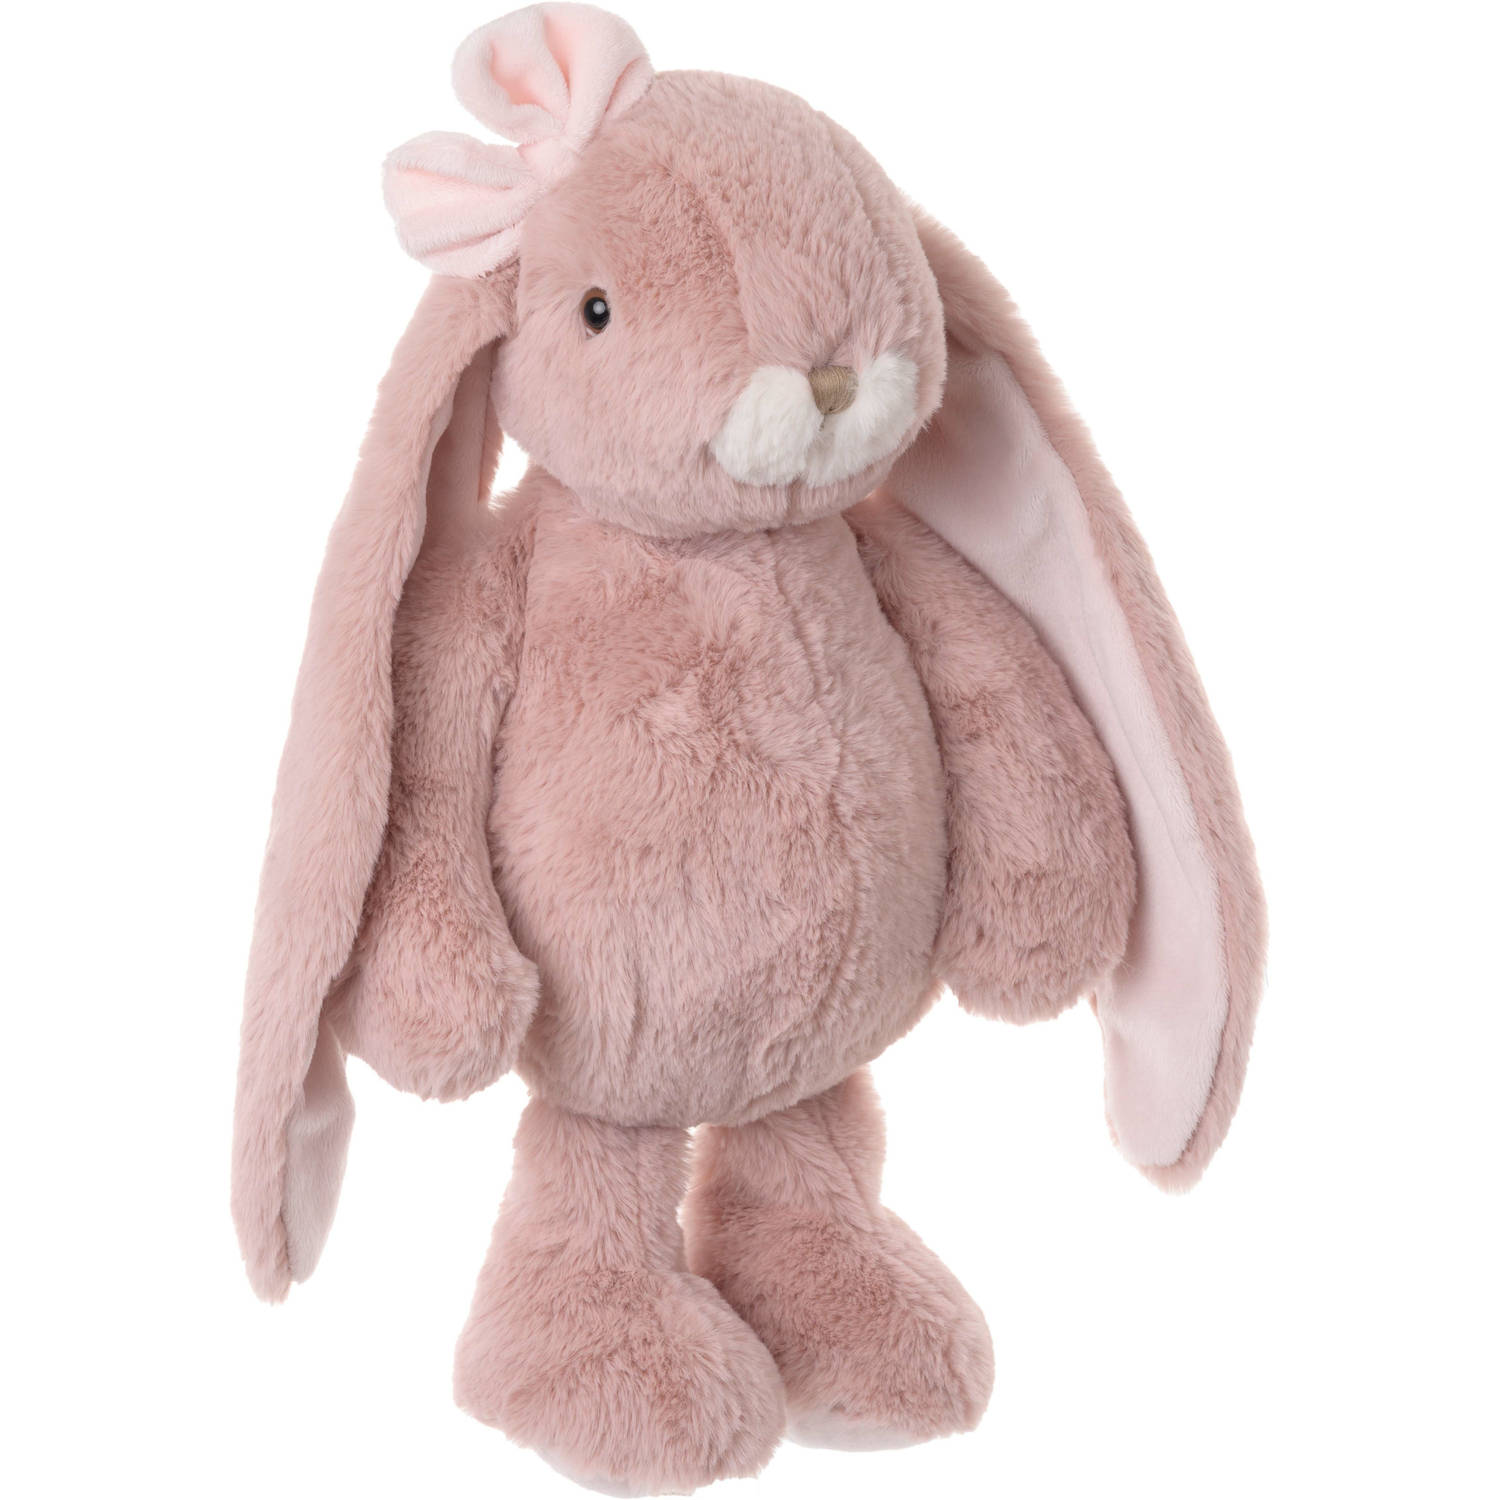 Bukowski pluche konijn knuffeldier - oud roze - staand - 40 cm - Luxe kwaliteit knuffels